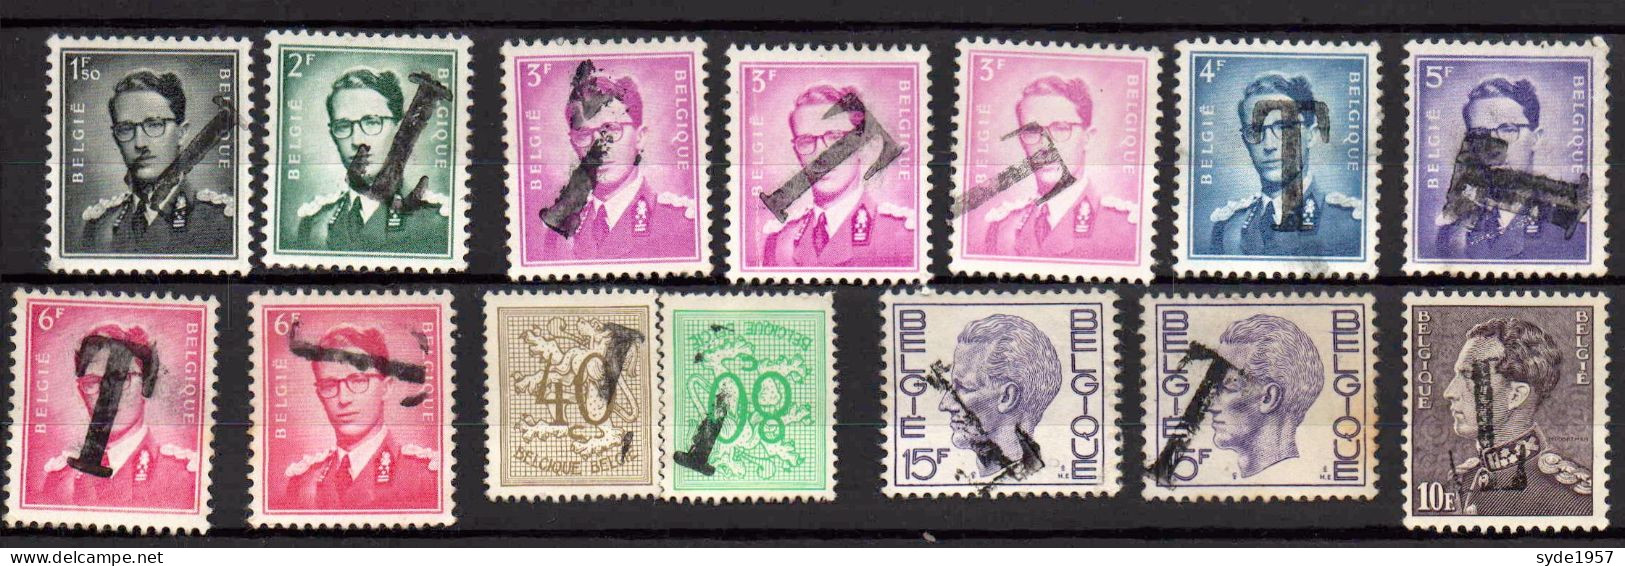 Belgique - Timbres Taxe 1966 : 14 Timbres Avec Surcharge T (Baudouin, Lion Héraldique Et Leopold 3) - Stamps